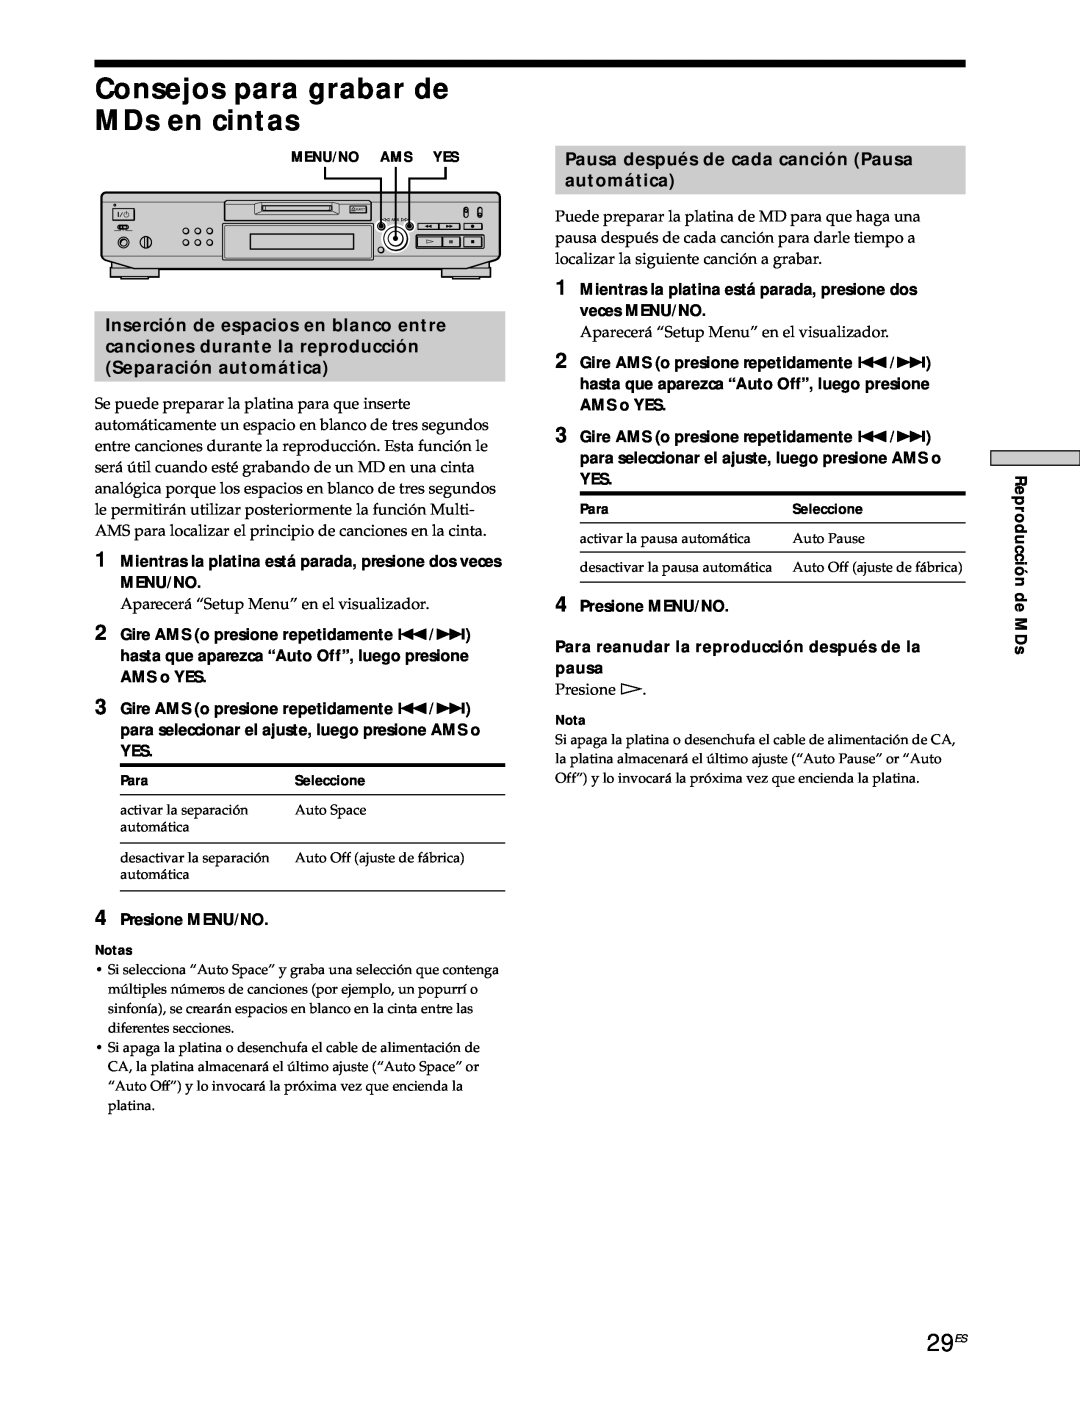 Sony MDS-JE530 manual Consejos para grabar de MDs en cintas, 29ES, Pausa después de cada canción Pausa automática 